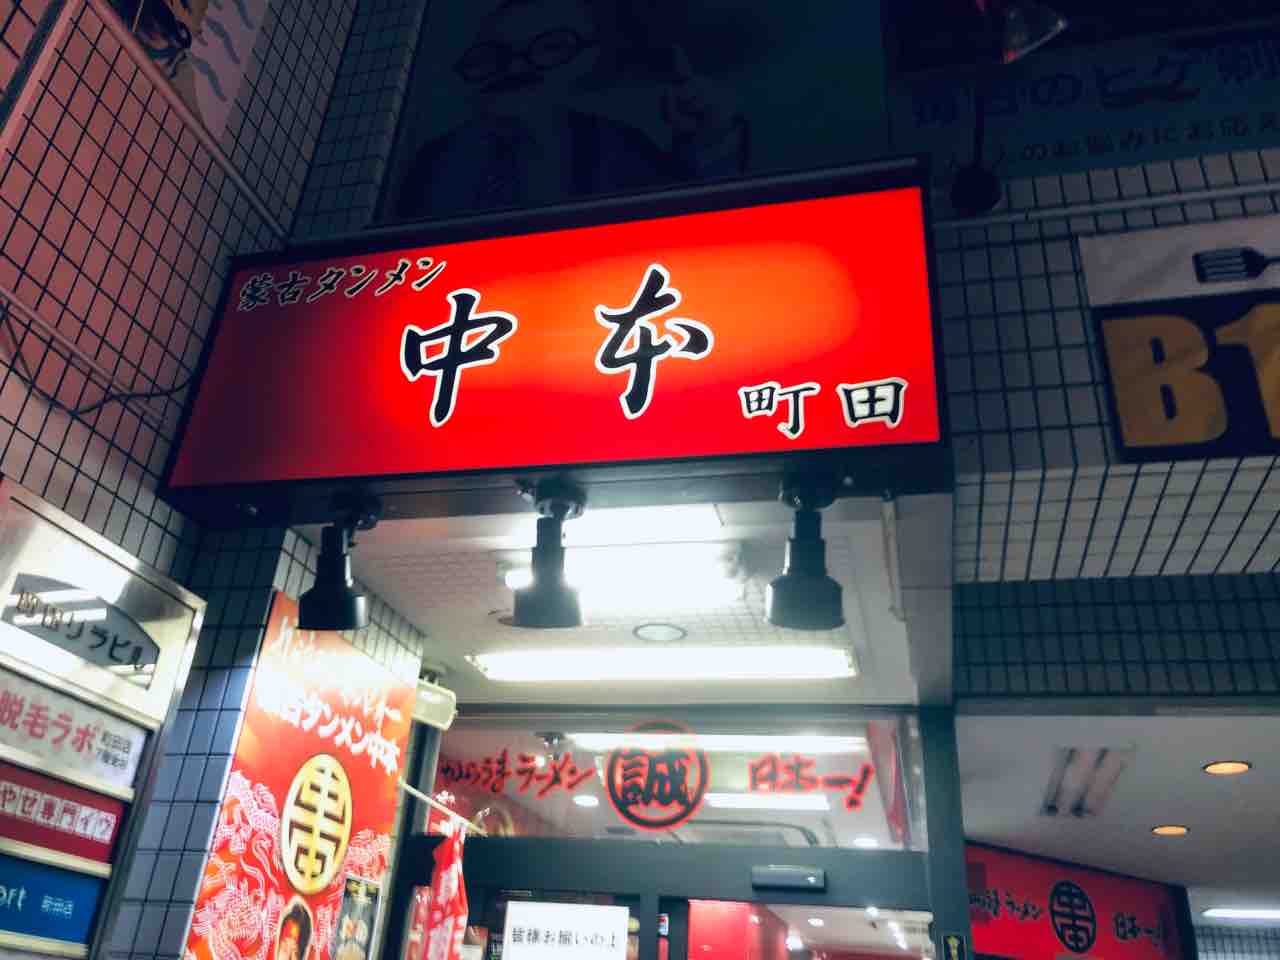 セブンイレブンでよく見るカップラーメンを実店舗にて 東京都町田市にある 蒙古タンメン中本 町田店 にて例のアレをキメてきました 函館 気まぐれブログ